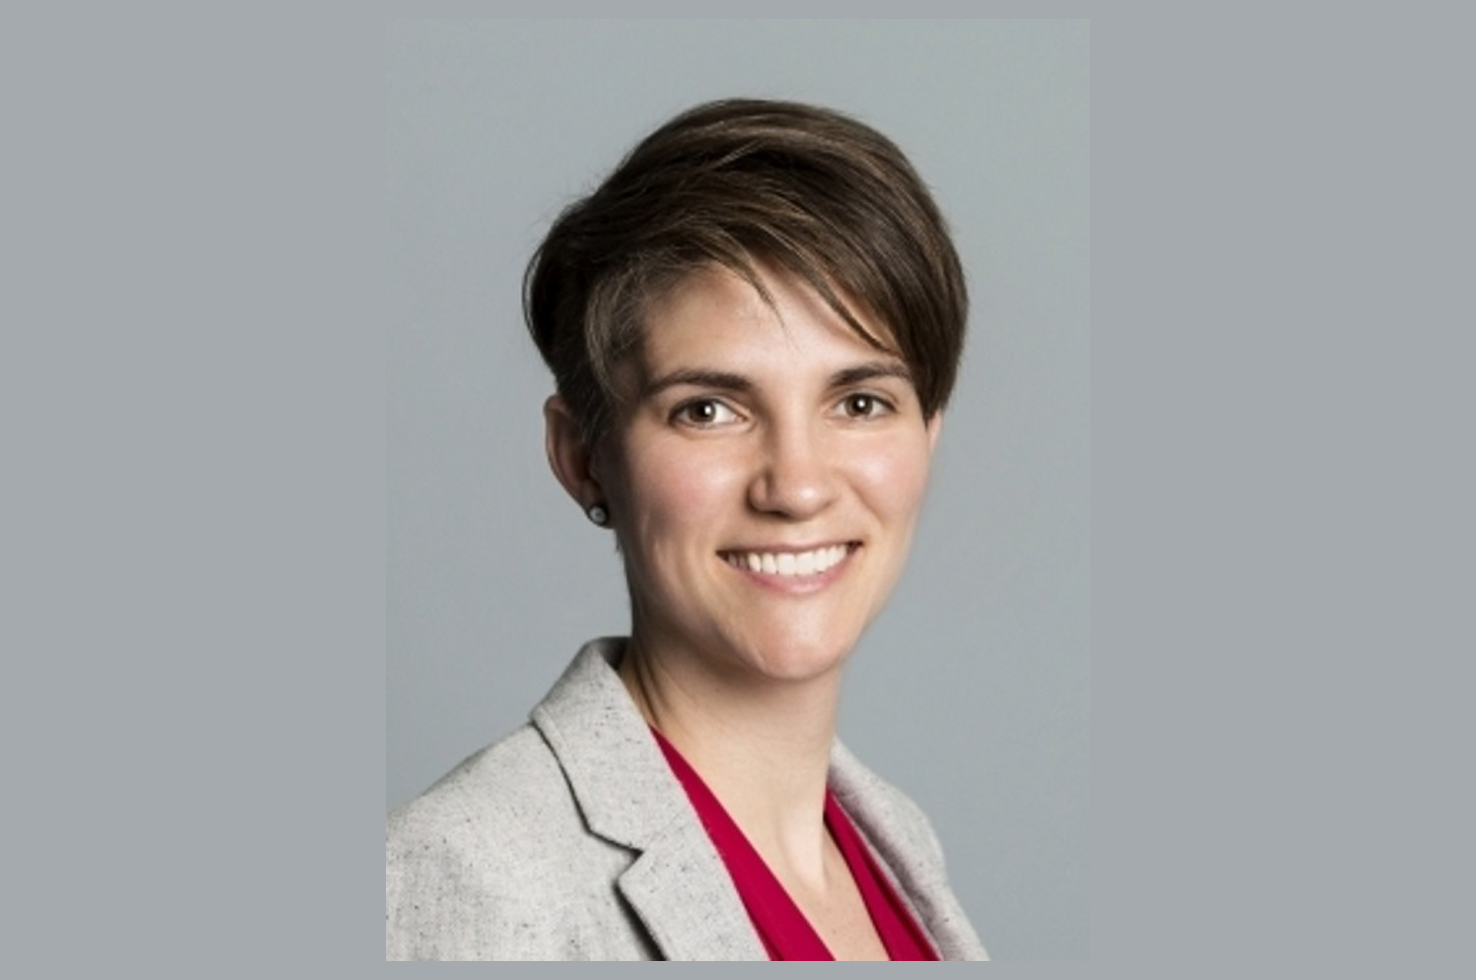 Dr. Sarah Pedersen